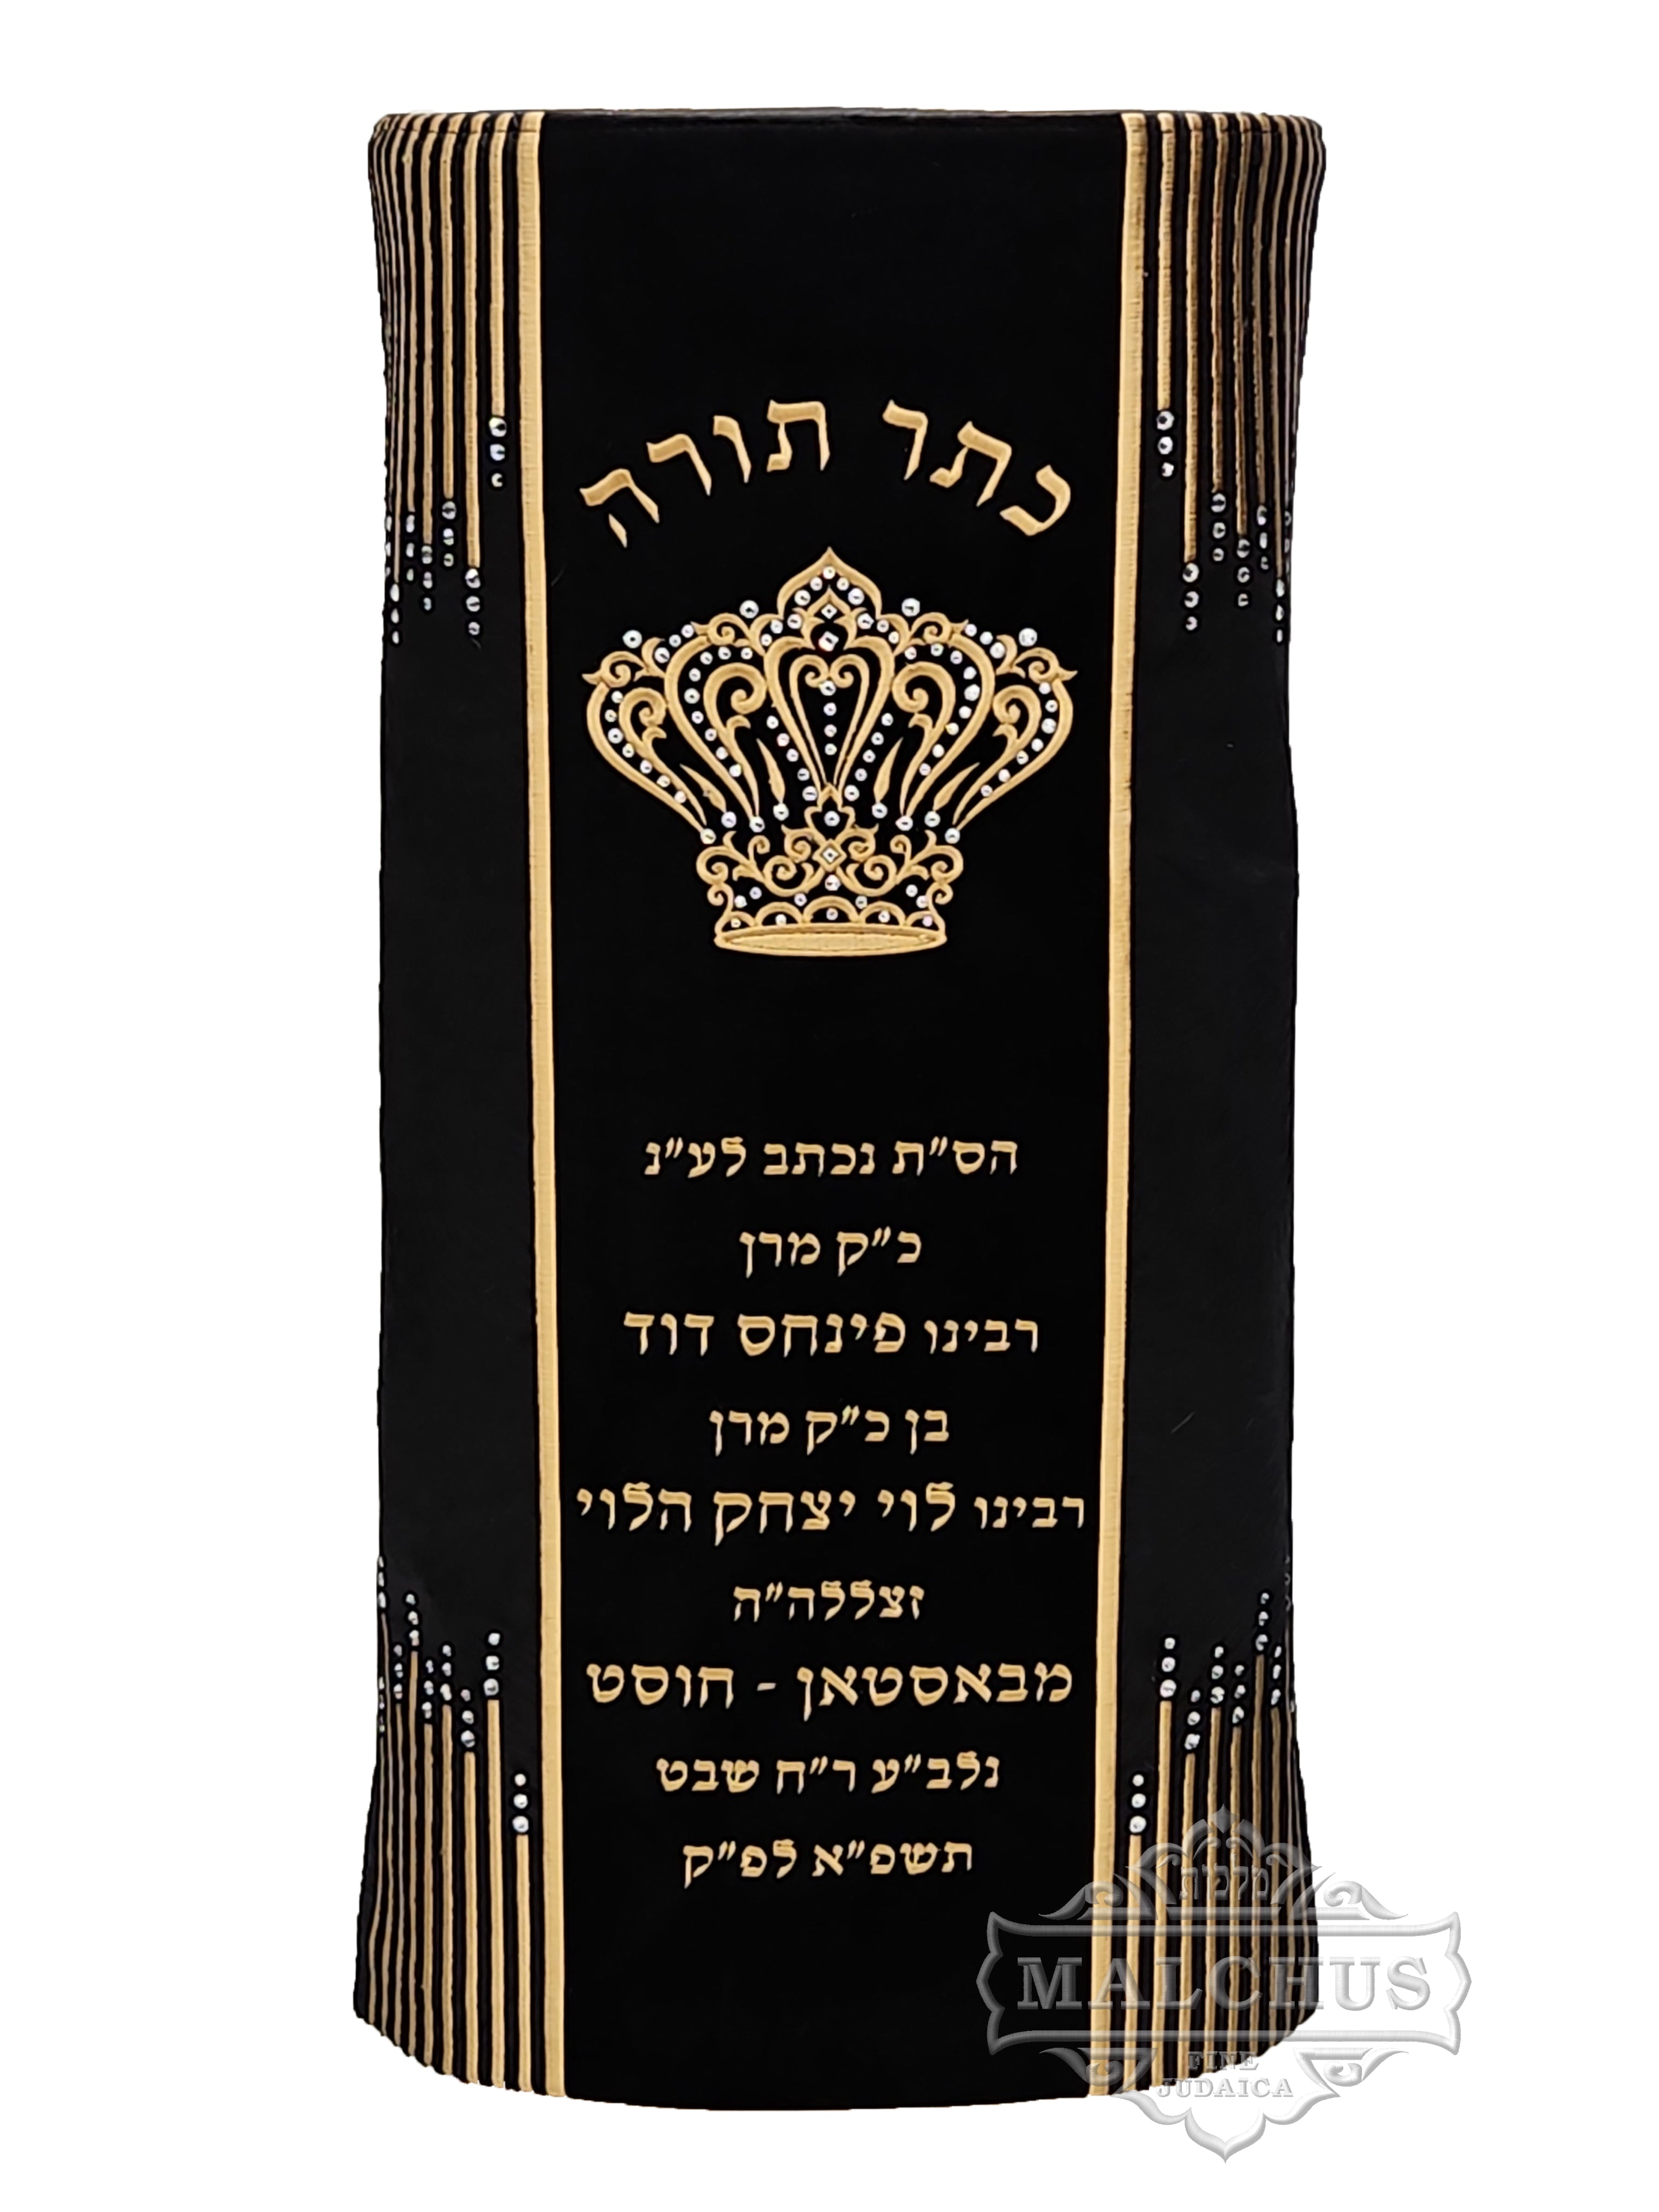 Sefer Torah Mantel #150-1